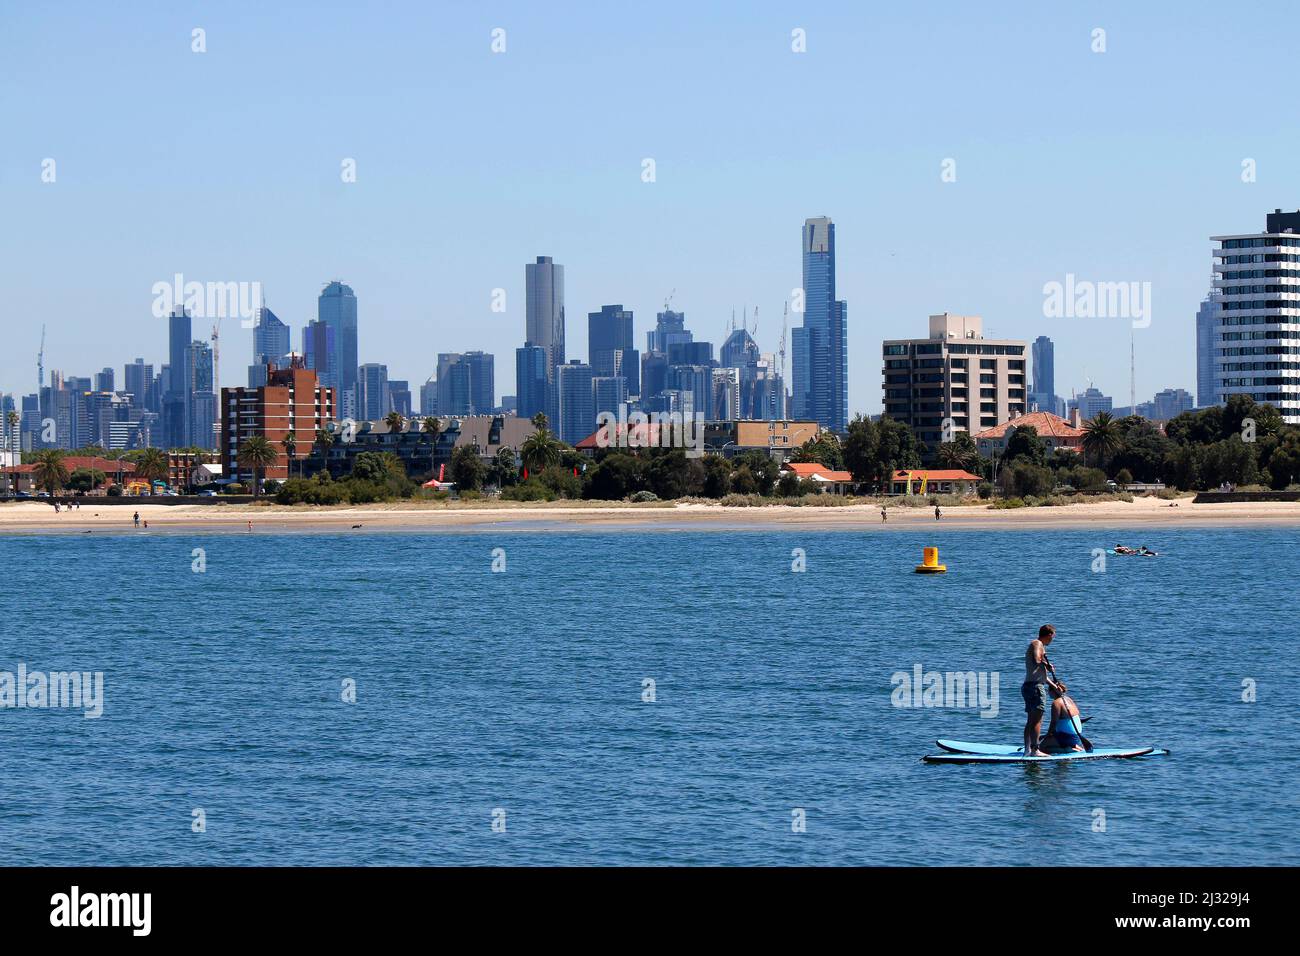 Skyline von Melbourne von Minion aus gesehen, Australia. Foto Stock